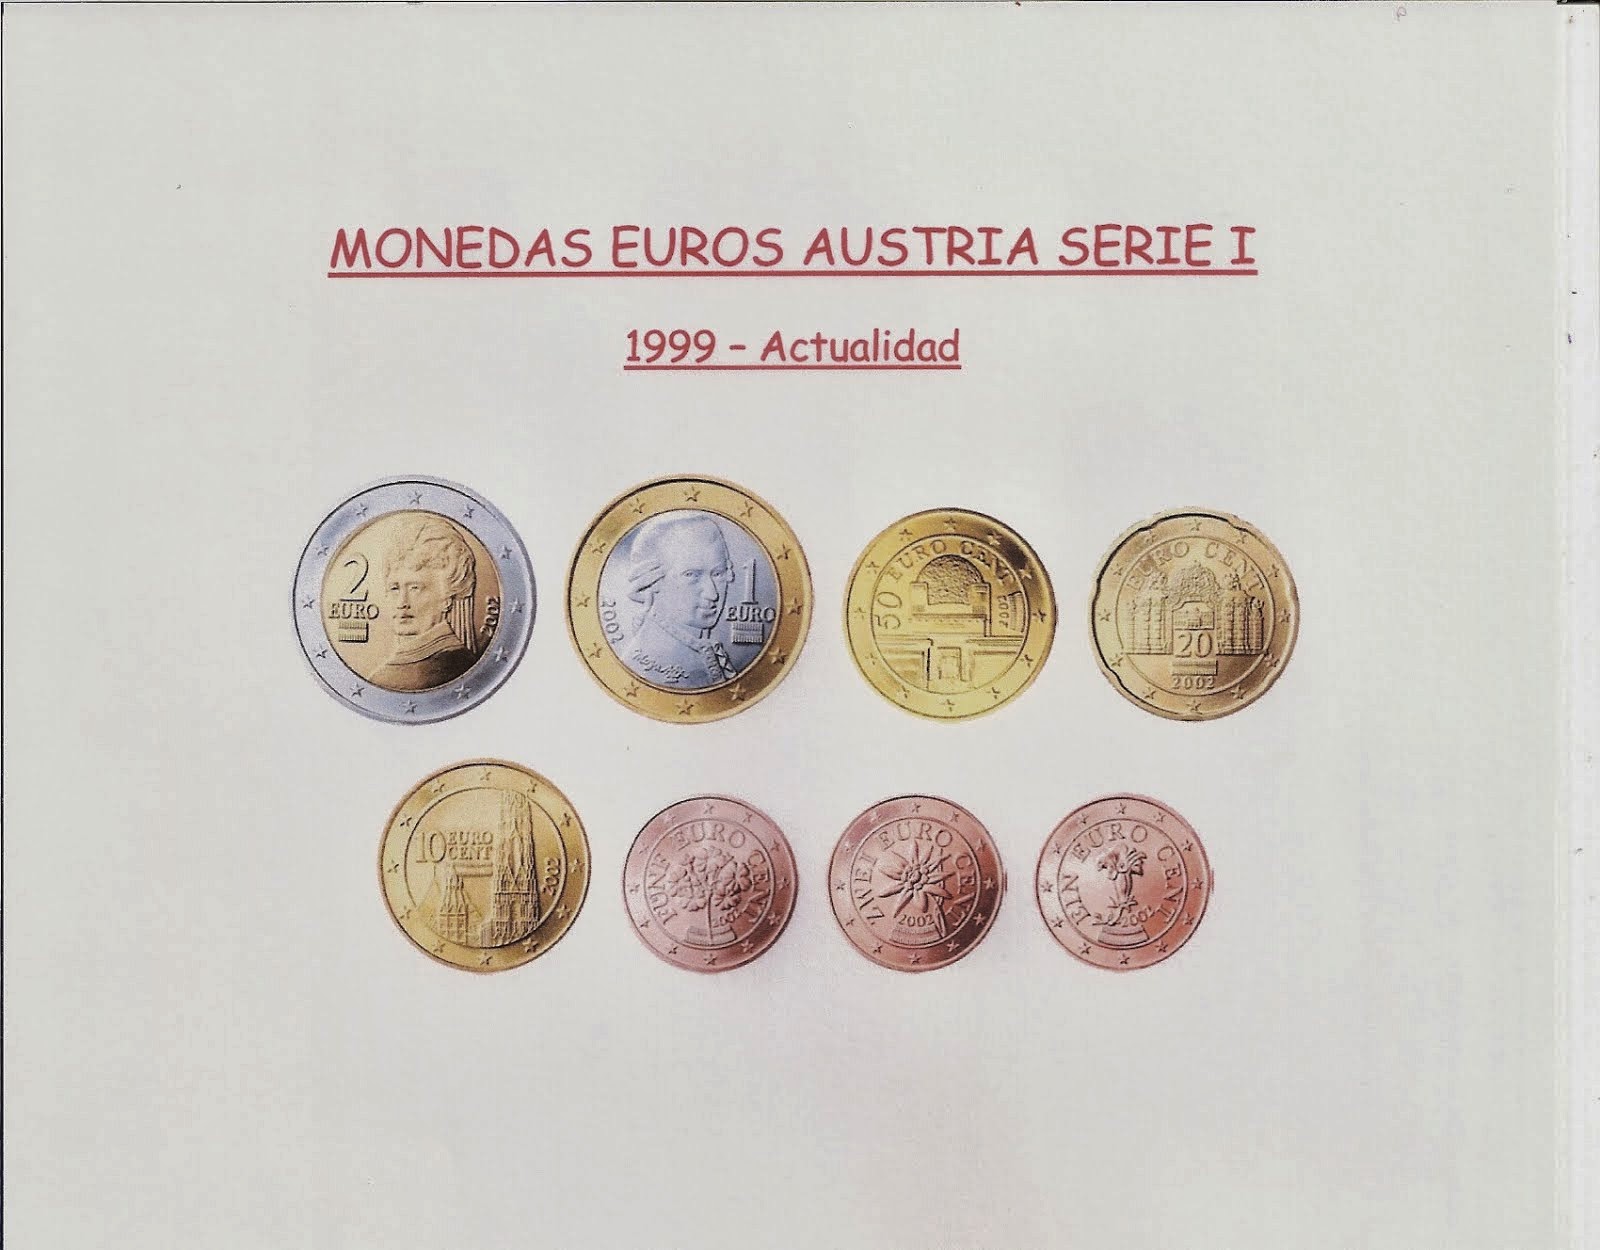 MONEDAS EUROS DE AUSTRIA